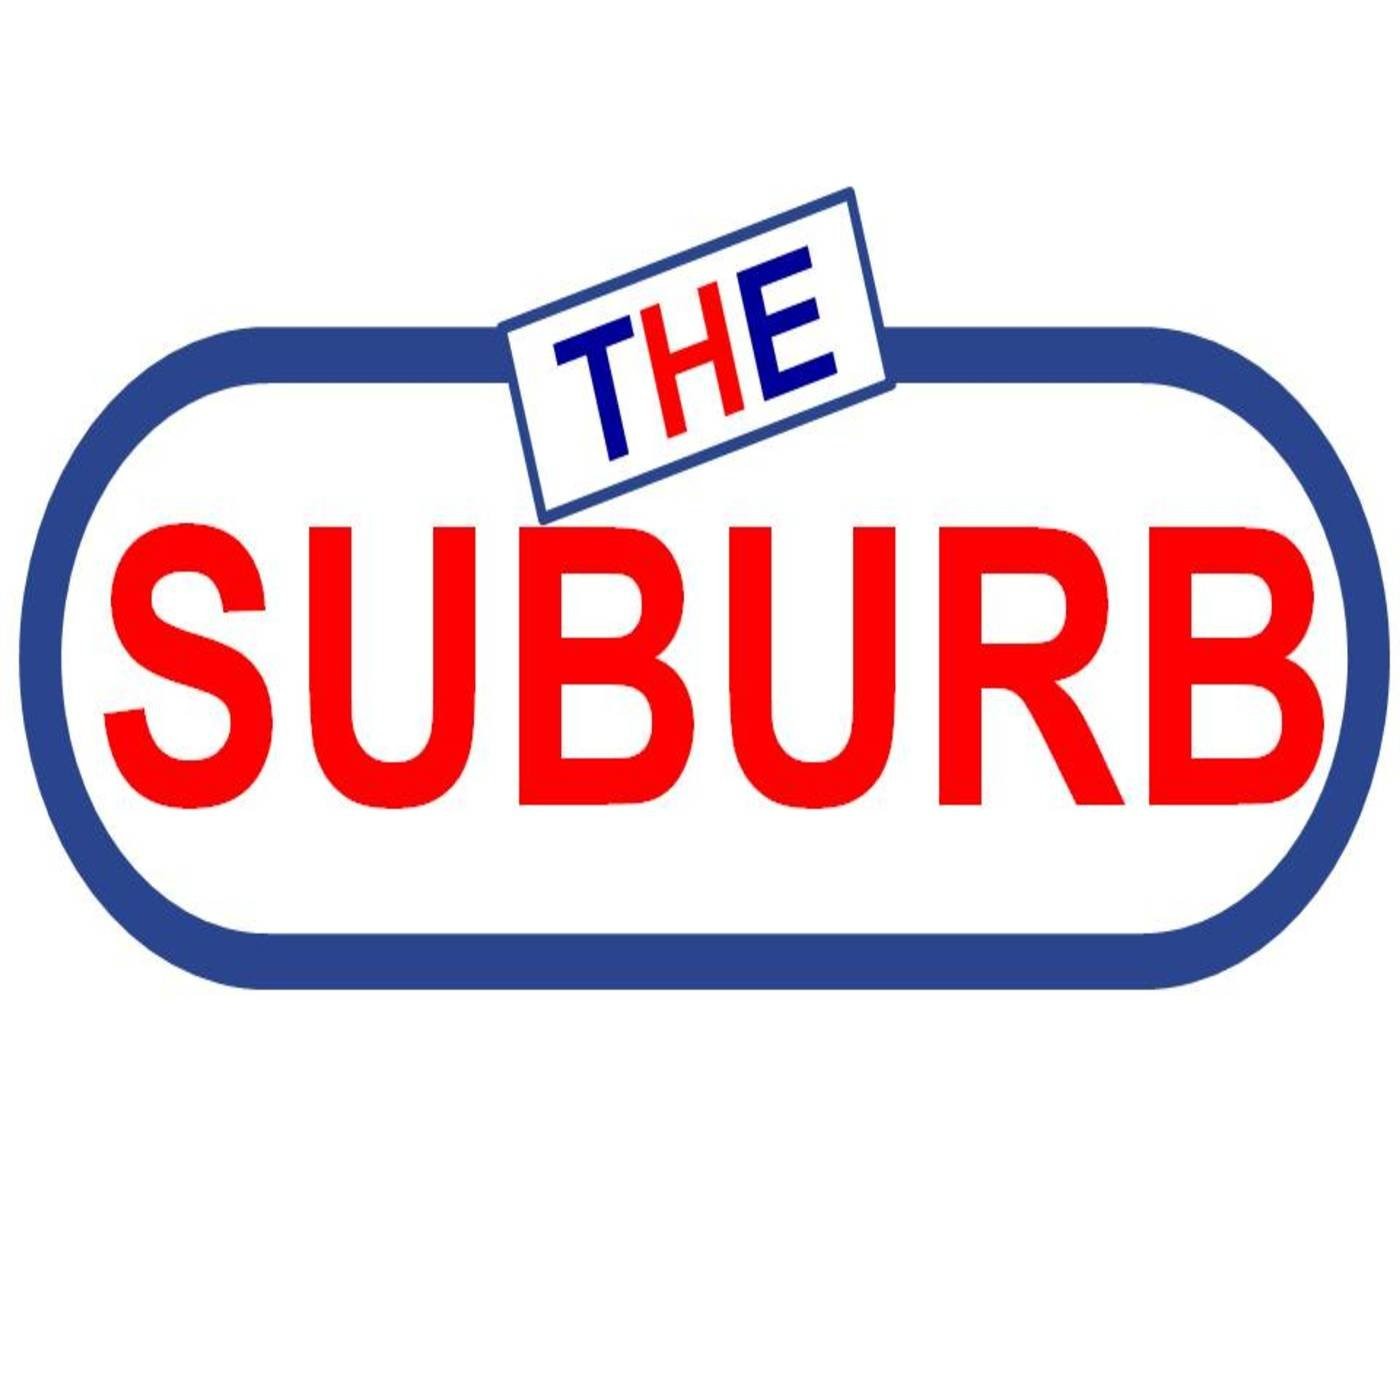 The Suburb, El Suburbio 3x4